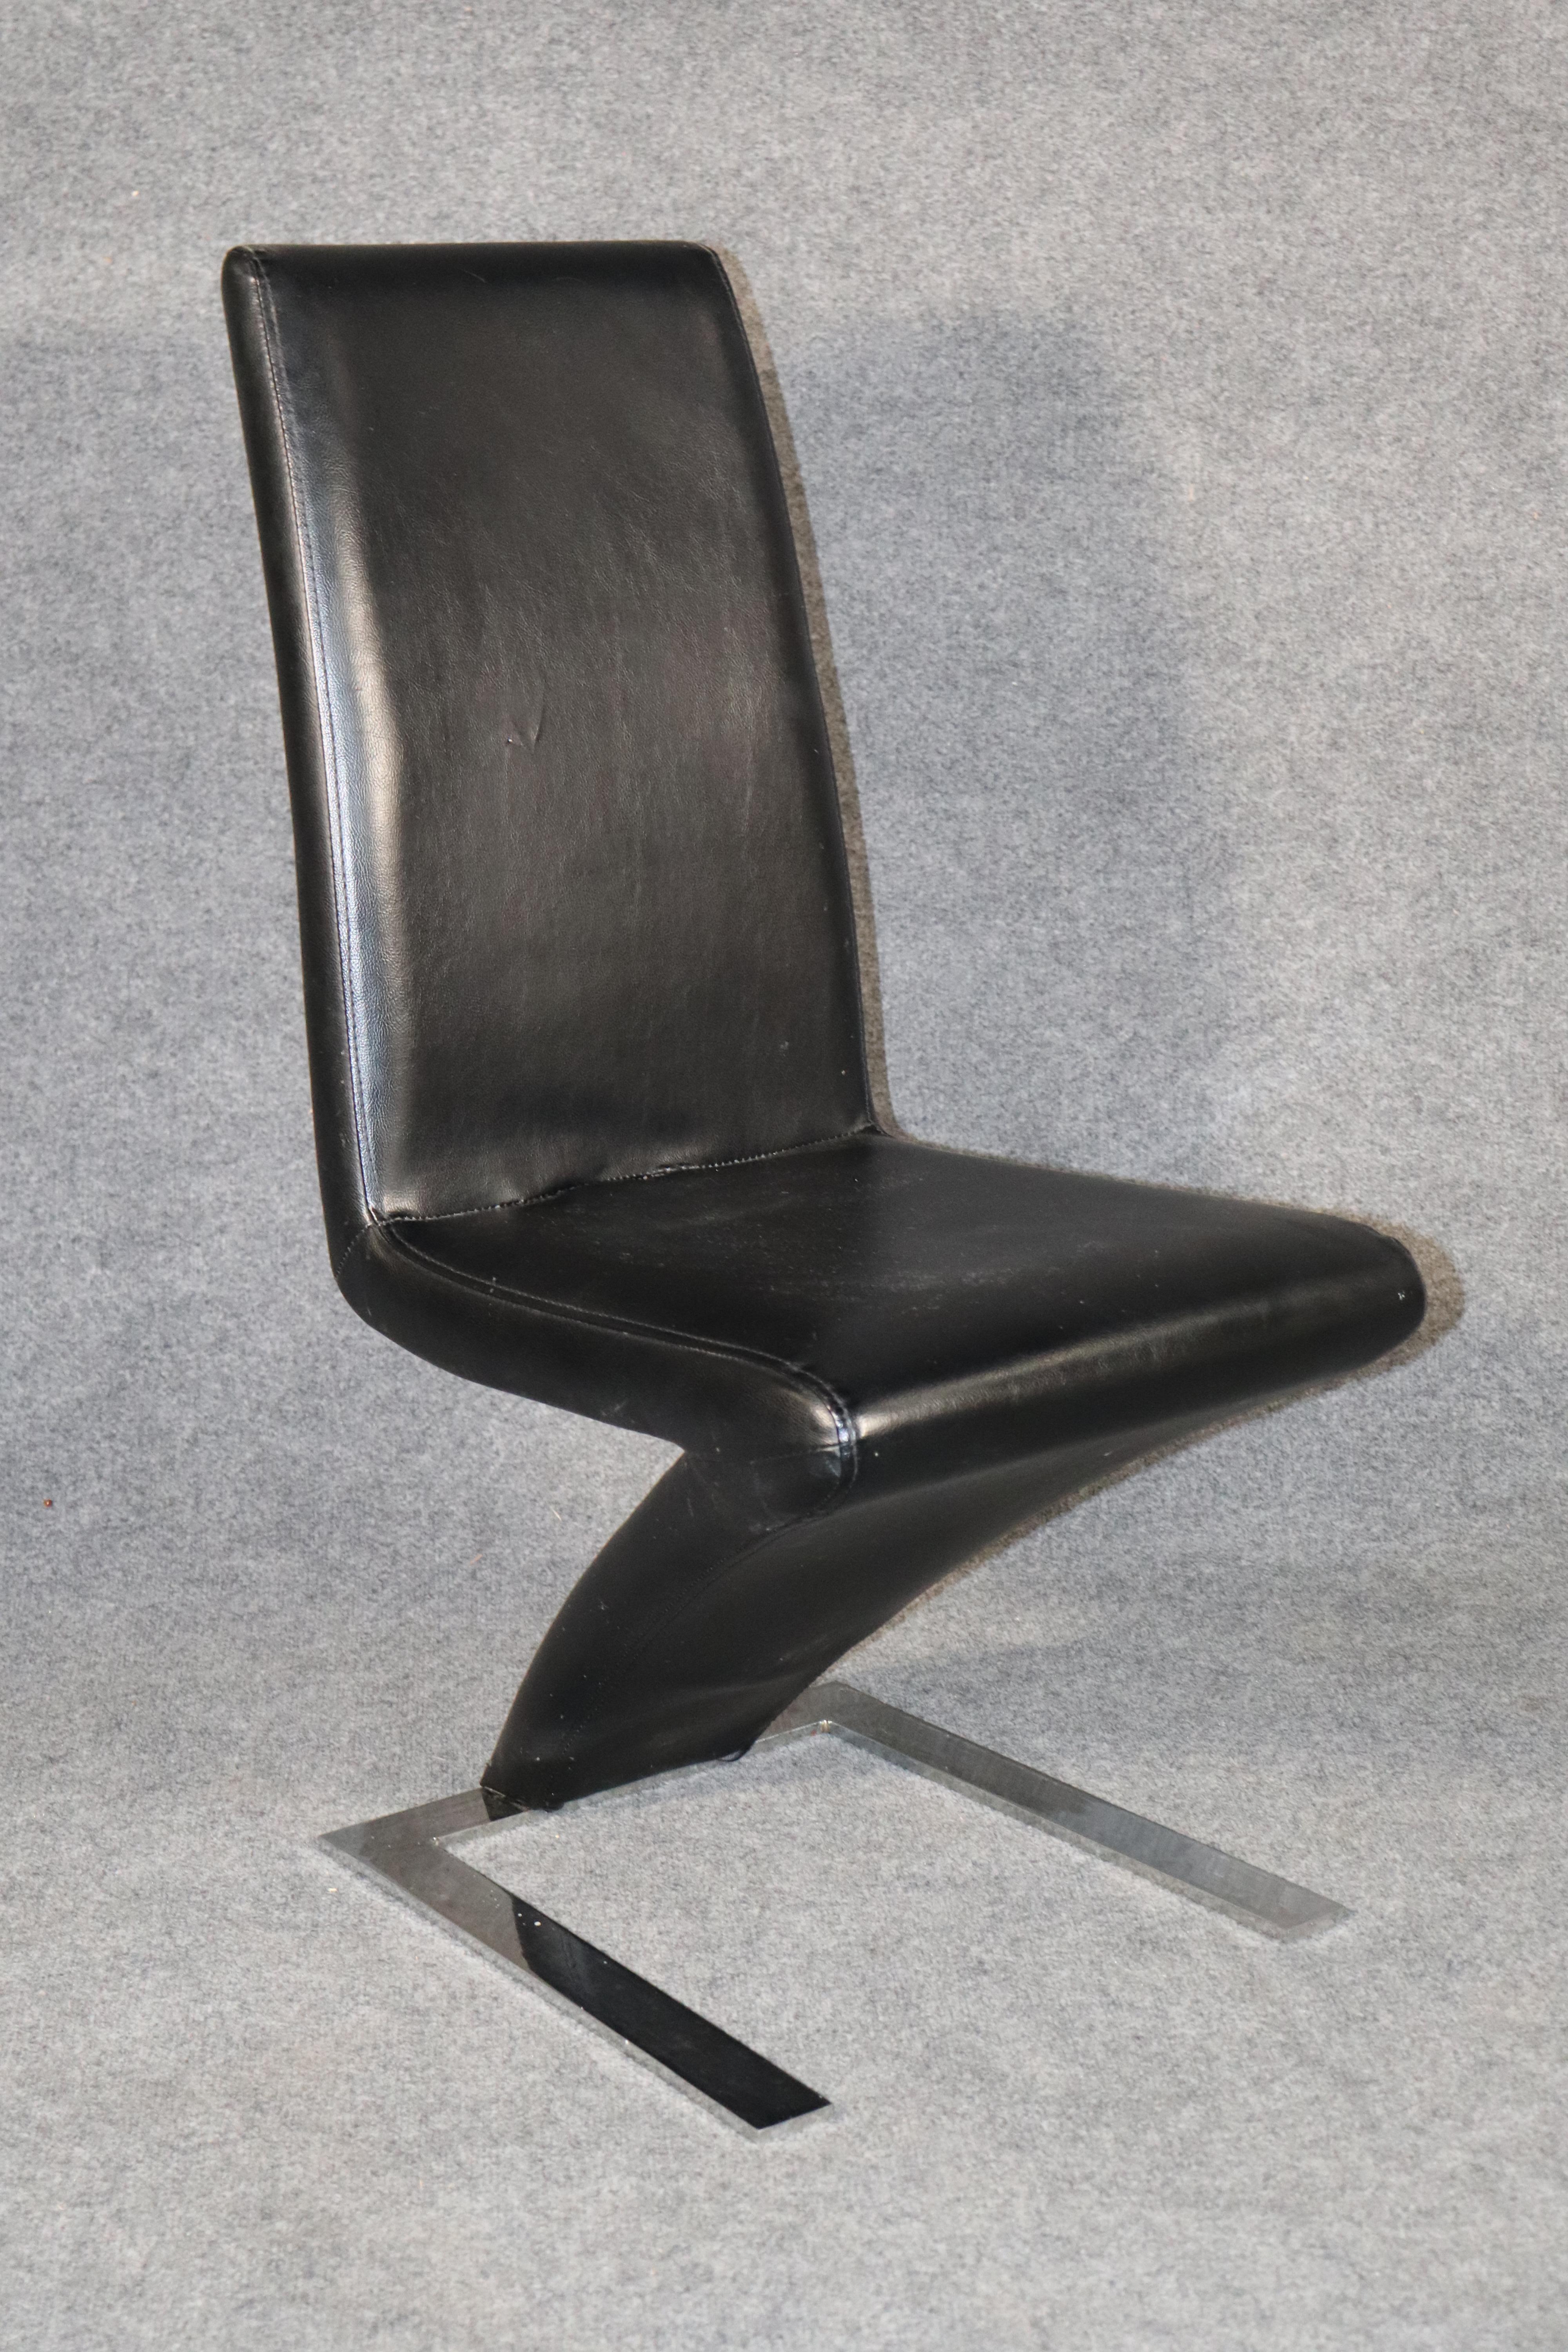 Chaises de salle à manger modernes avec une assise en cuir en forme de Z, posées sur une base en métal chromé.
Veuillez confirmer l'emplacement.